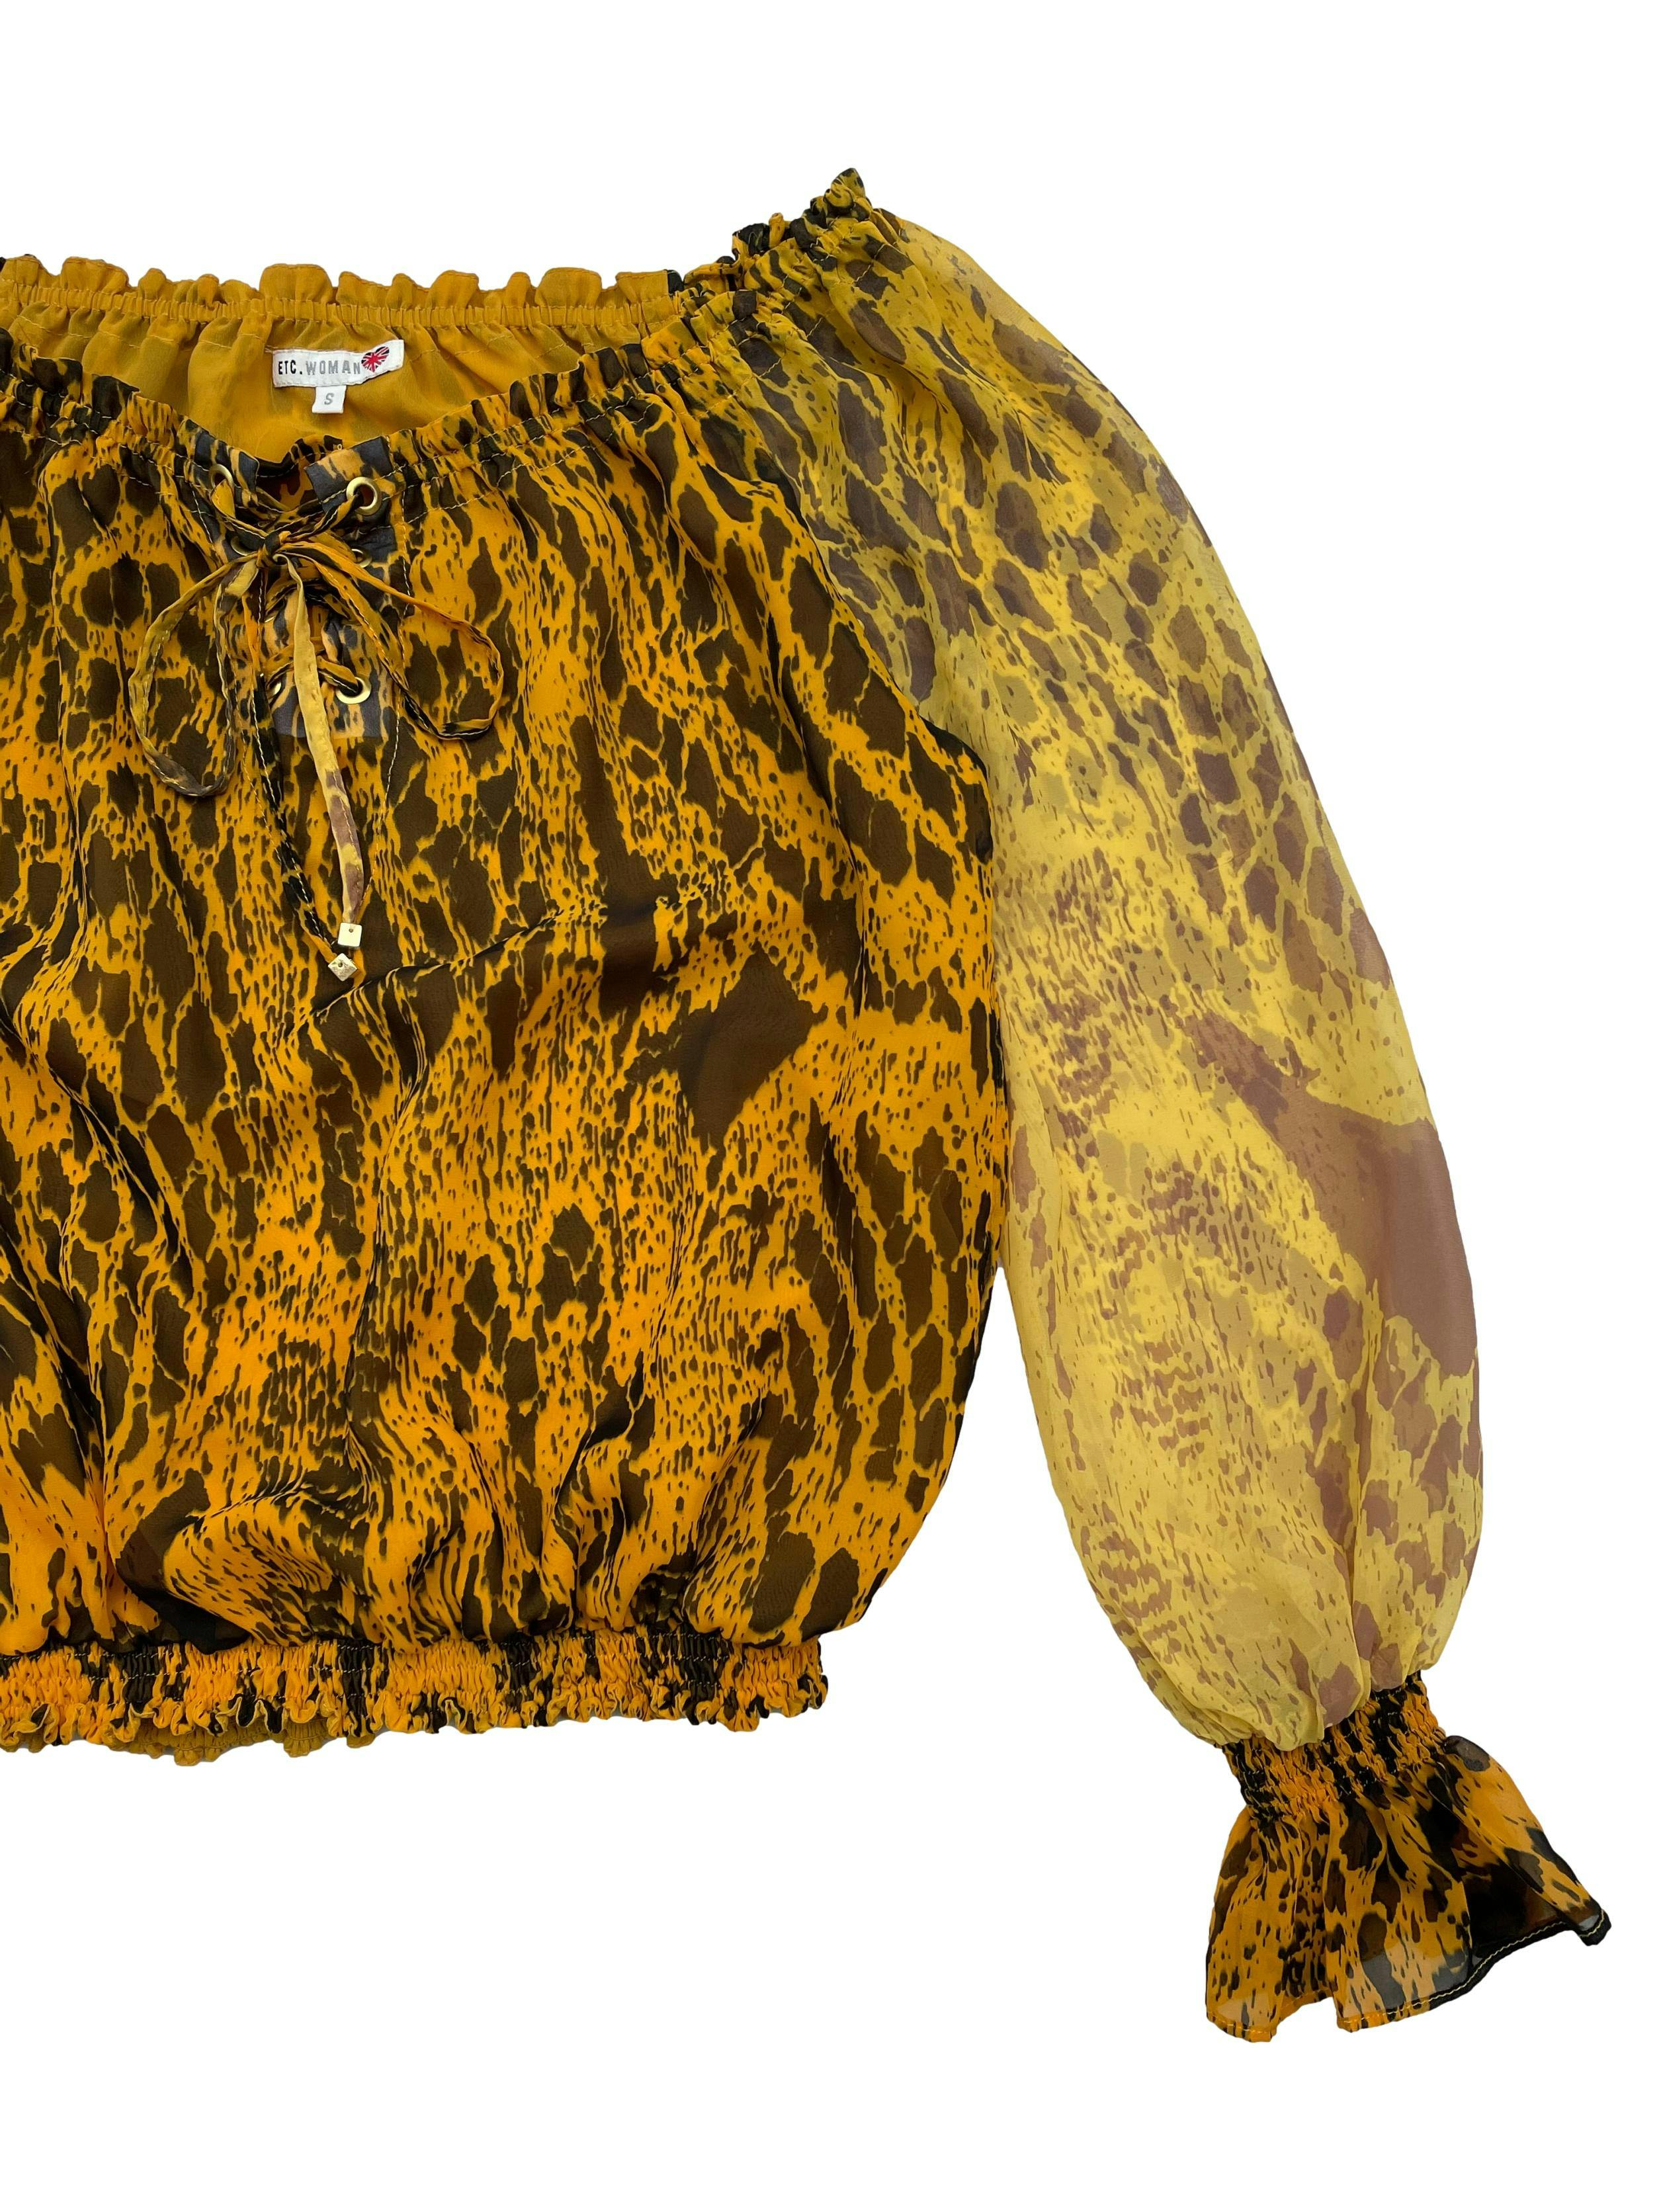 Blusa ETC de gasa amarilla con estampado en marrón y negro, off shoulder, cuerpo forrado. Busto 105cm Largo 48cm